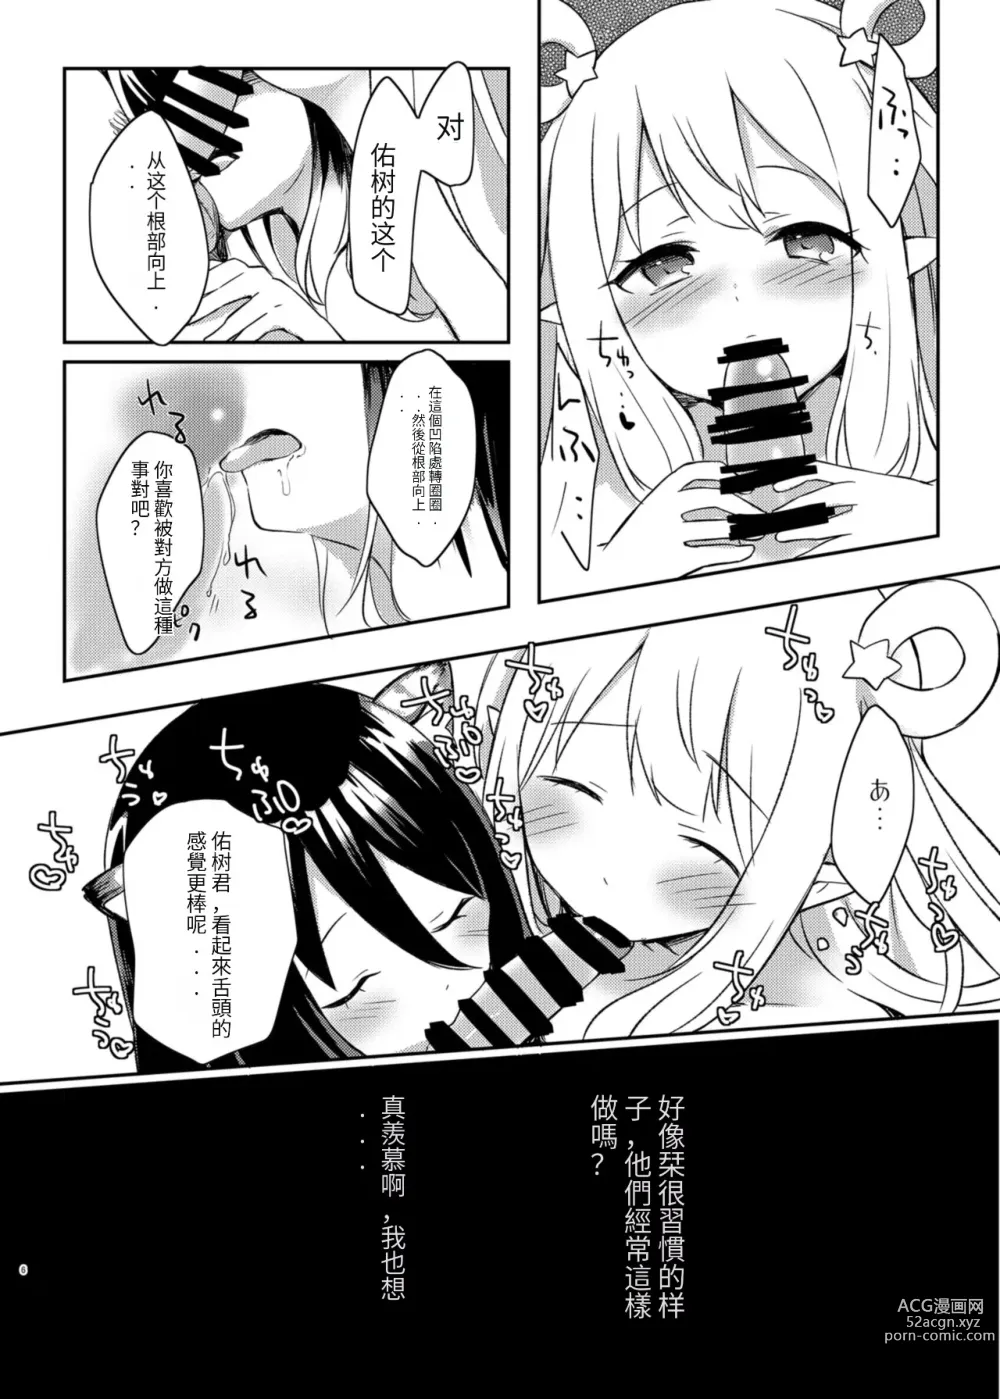 Page 6 of doujinshi Hatsune to Shiori no Yukemuri Daisakusen